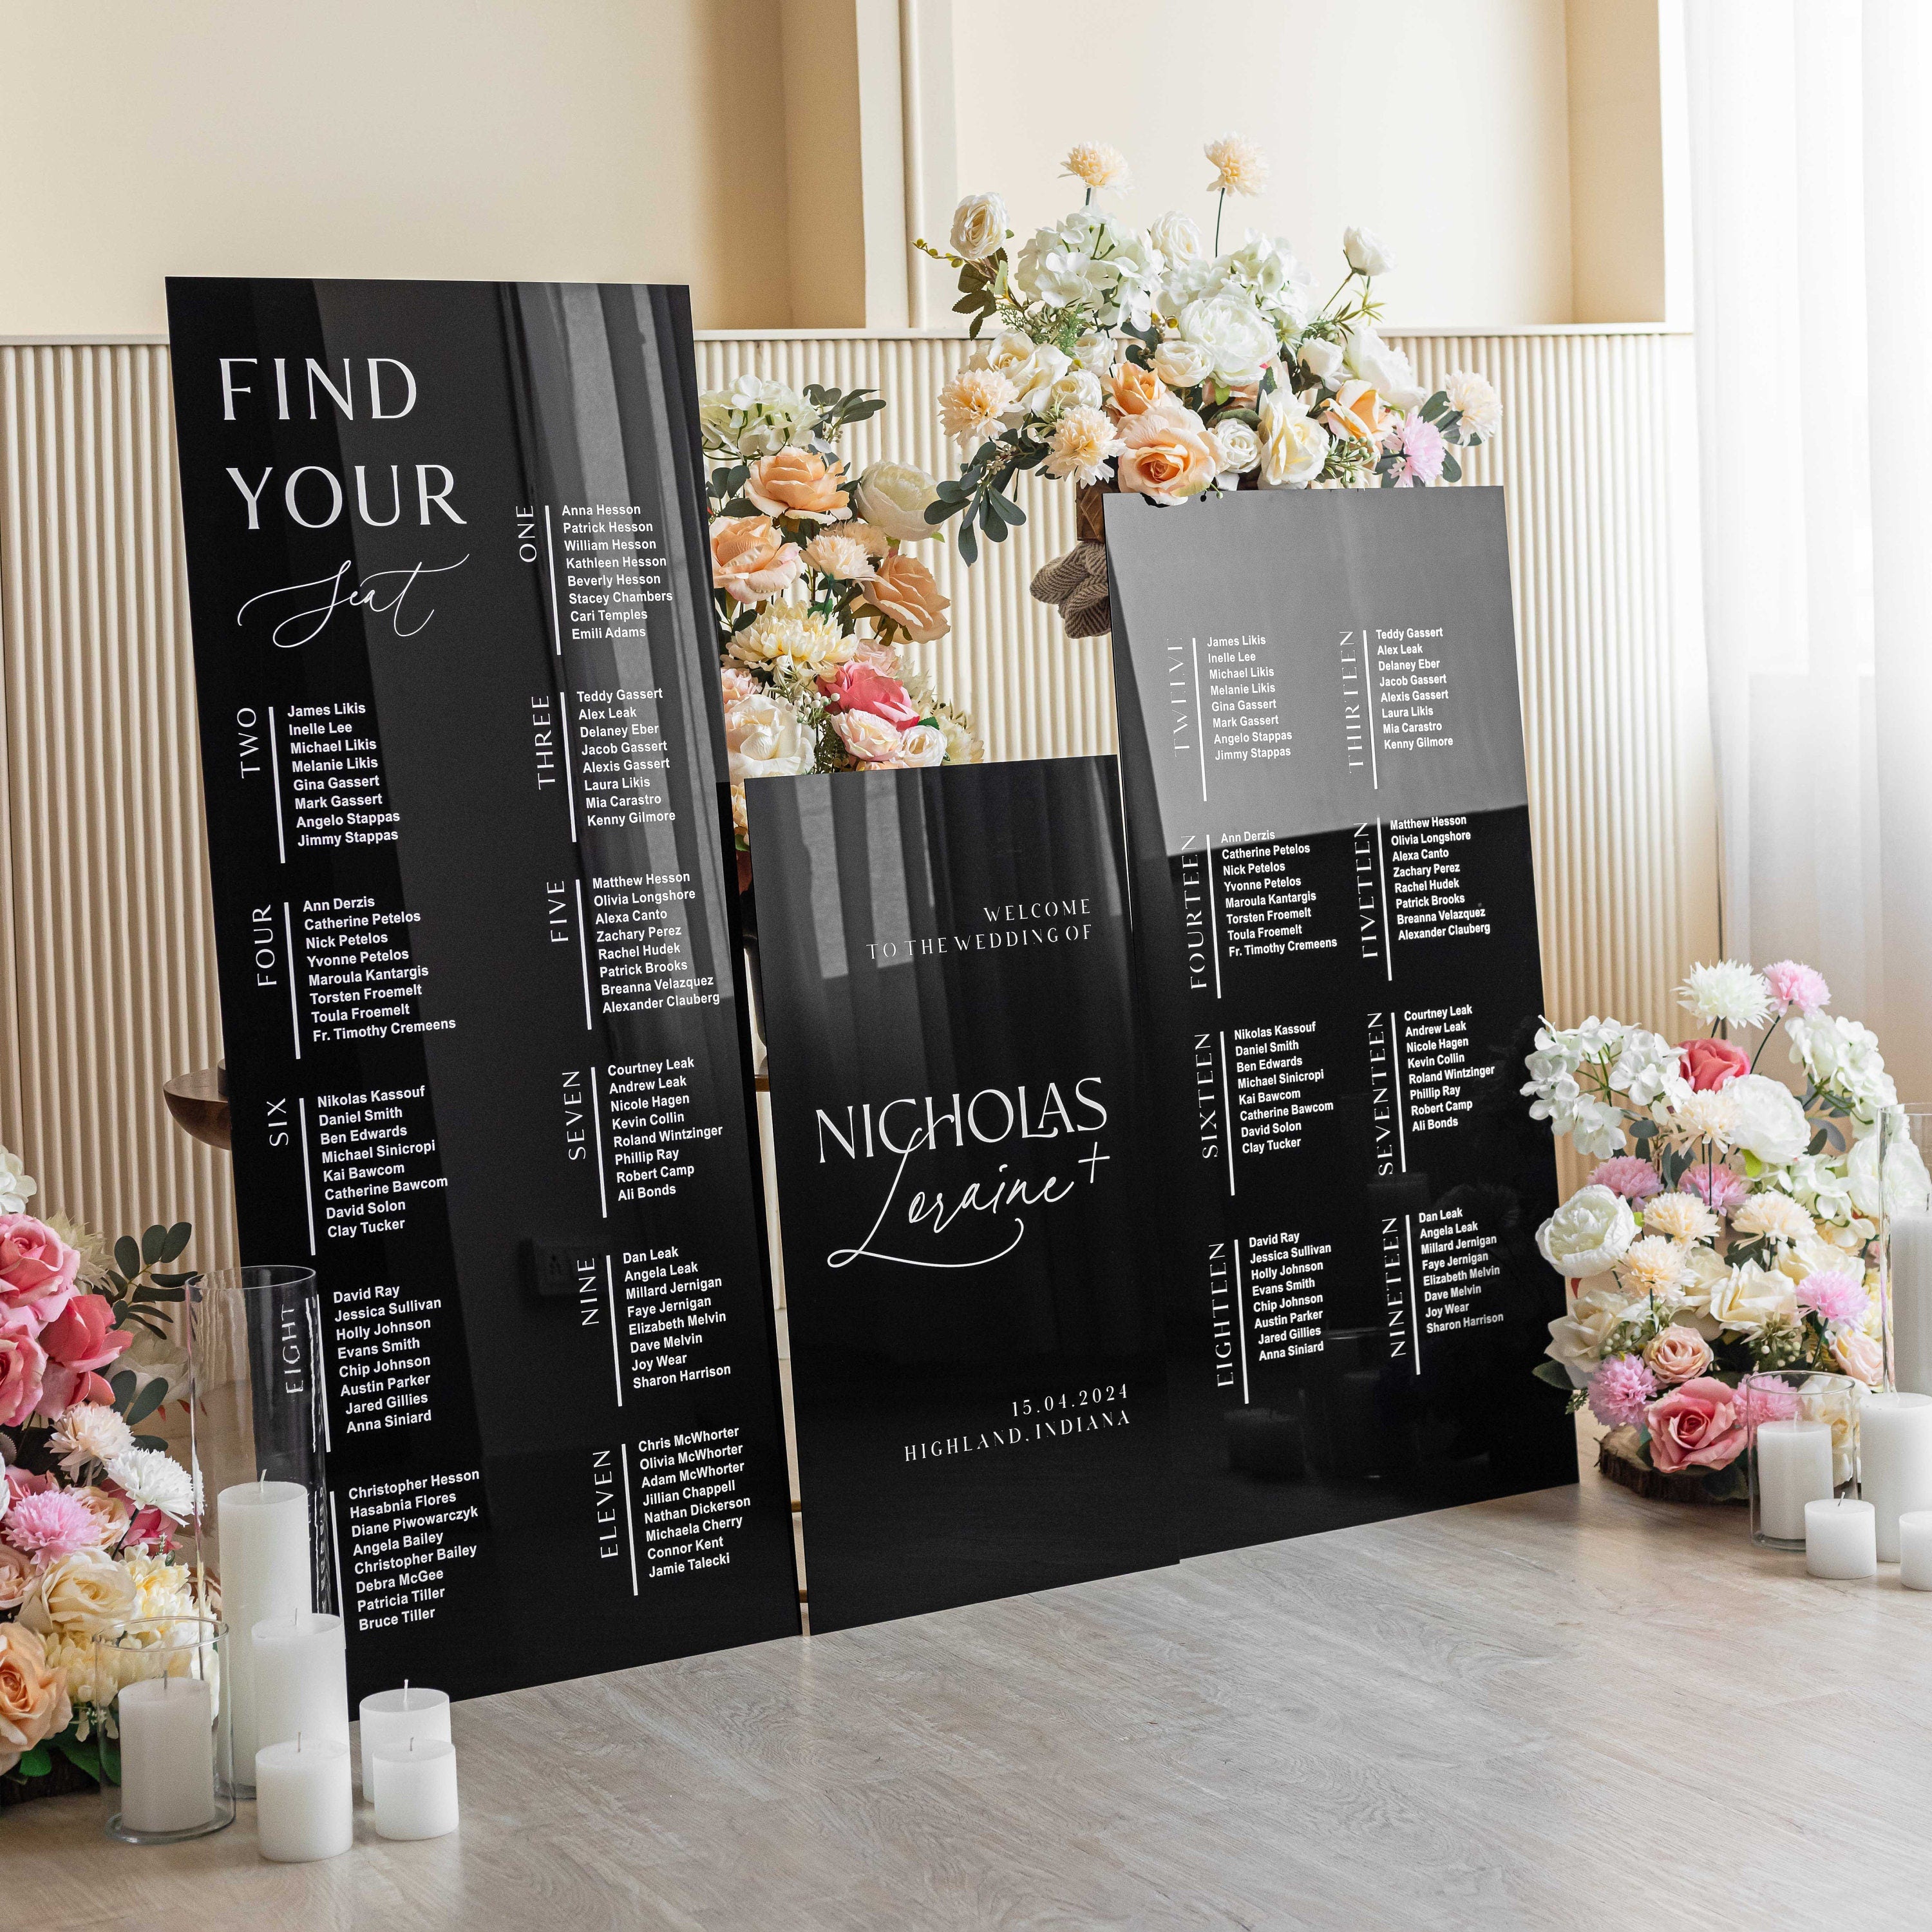 Wedding Bundle - Set of 3 Wedding Signs - Seating Chart Sign - Wedding Welcome Sign - Reception Signage - Black Acrylic Wedding Signage